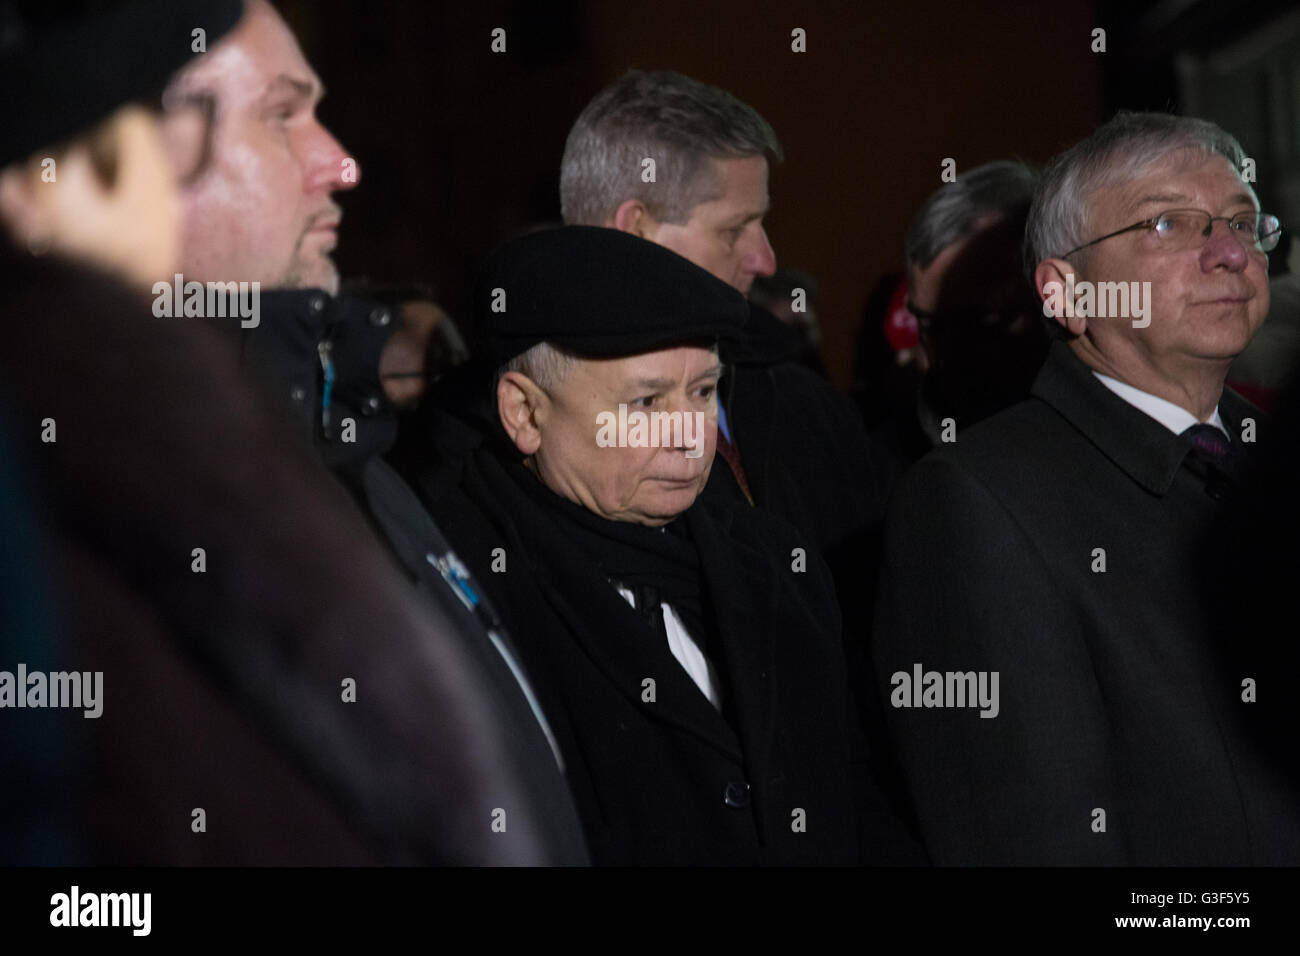 Il Leader del polacco del partito di governo, il diritto e la giustizia (PI), Jaroslaw Kaczynski in una chiesa, in Polonia. Foto Stock